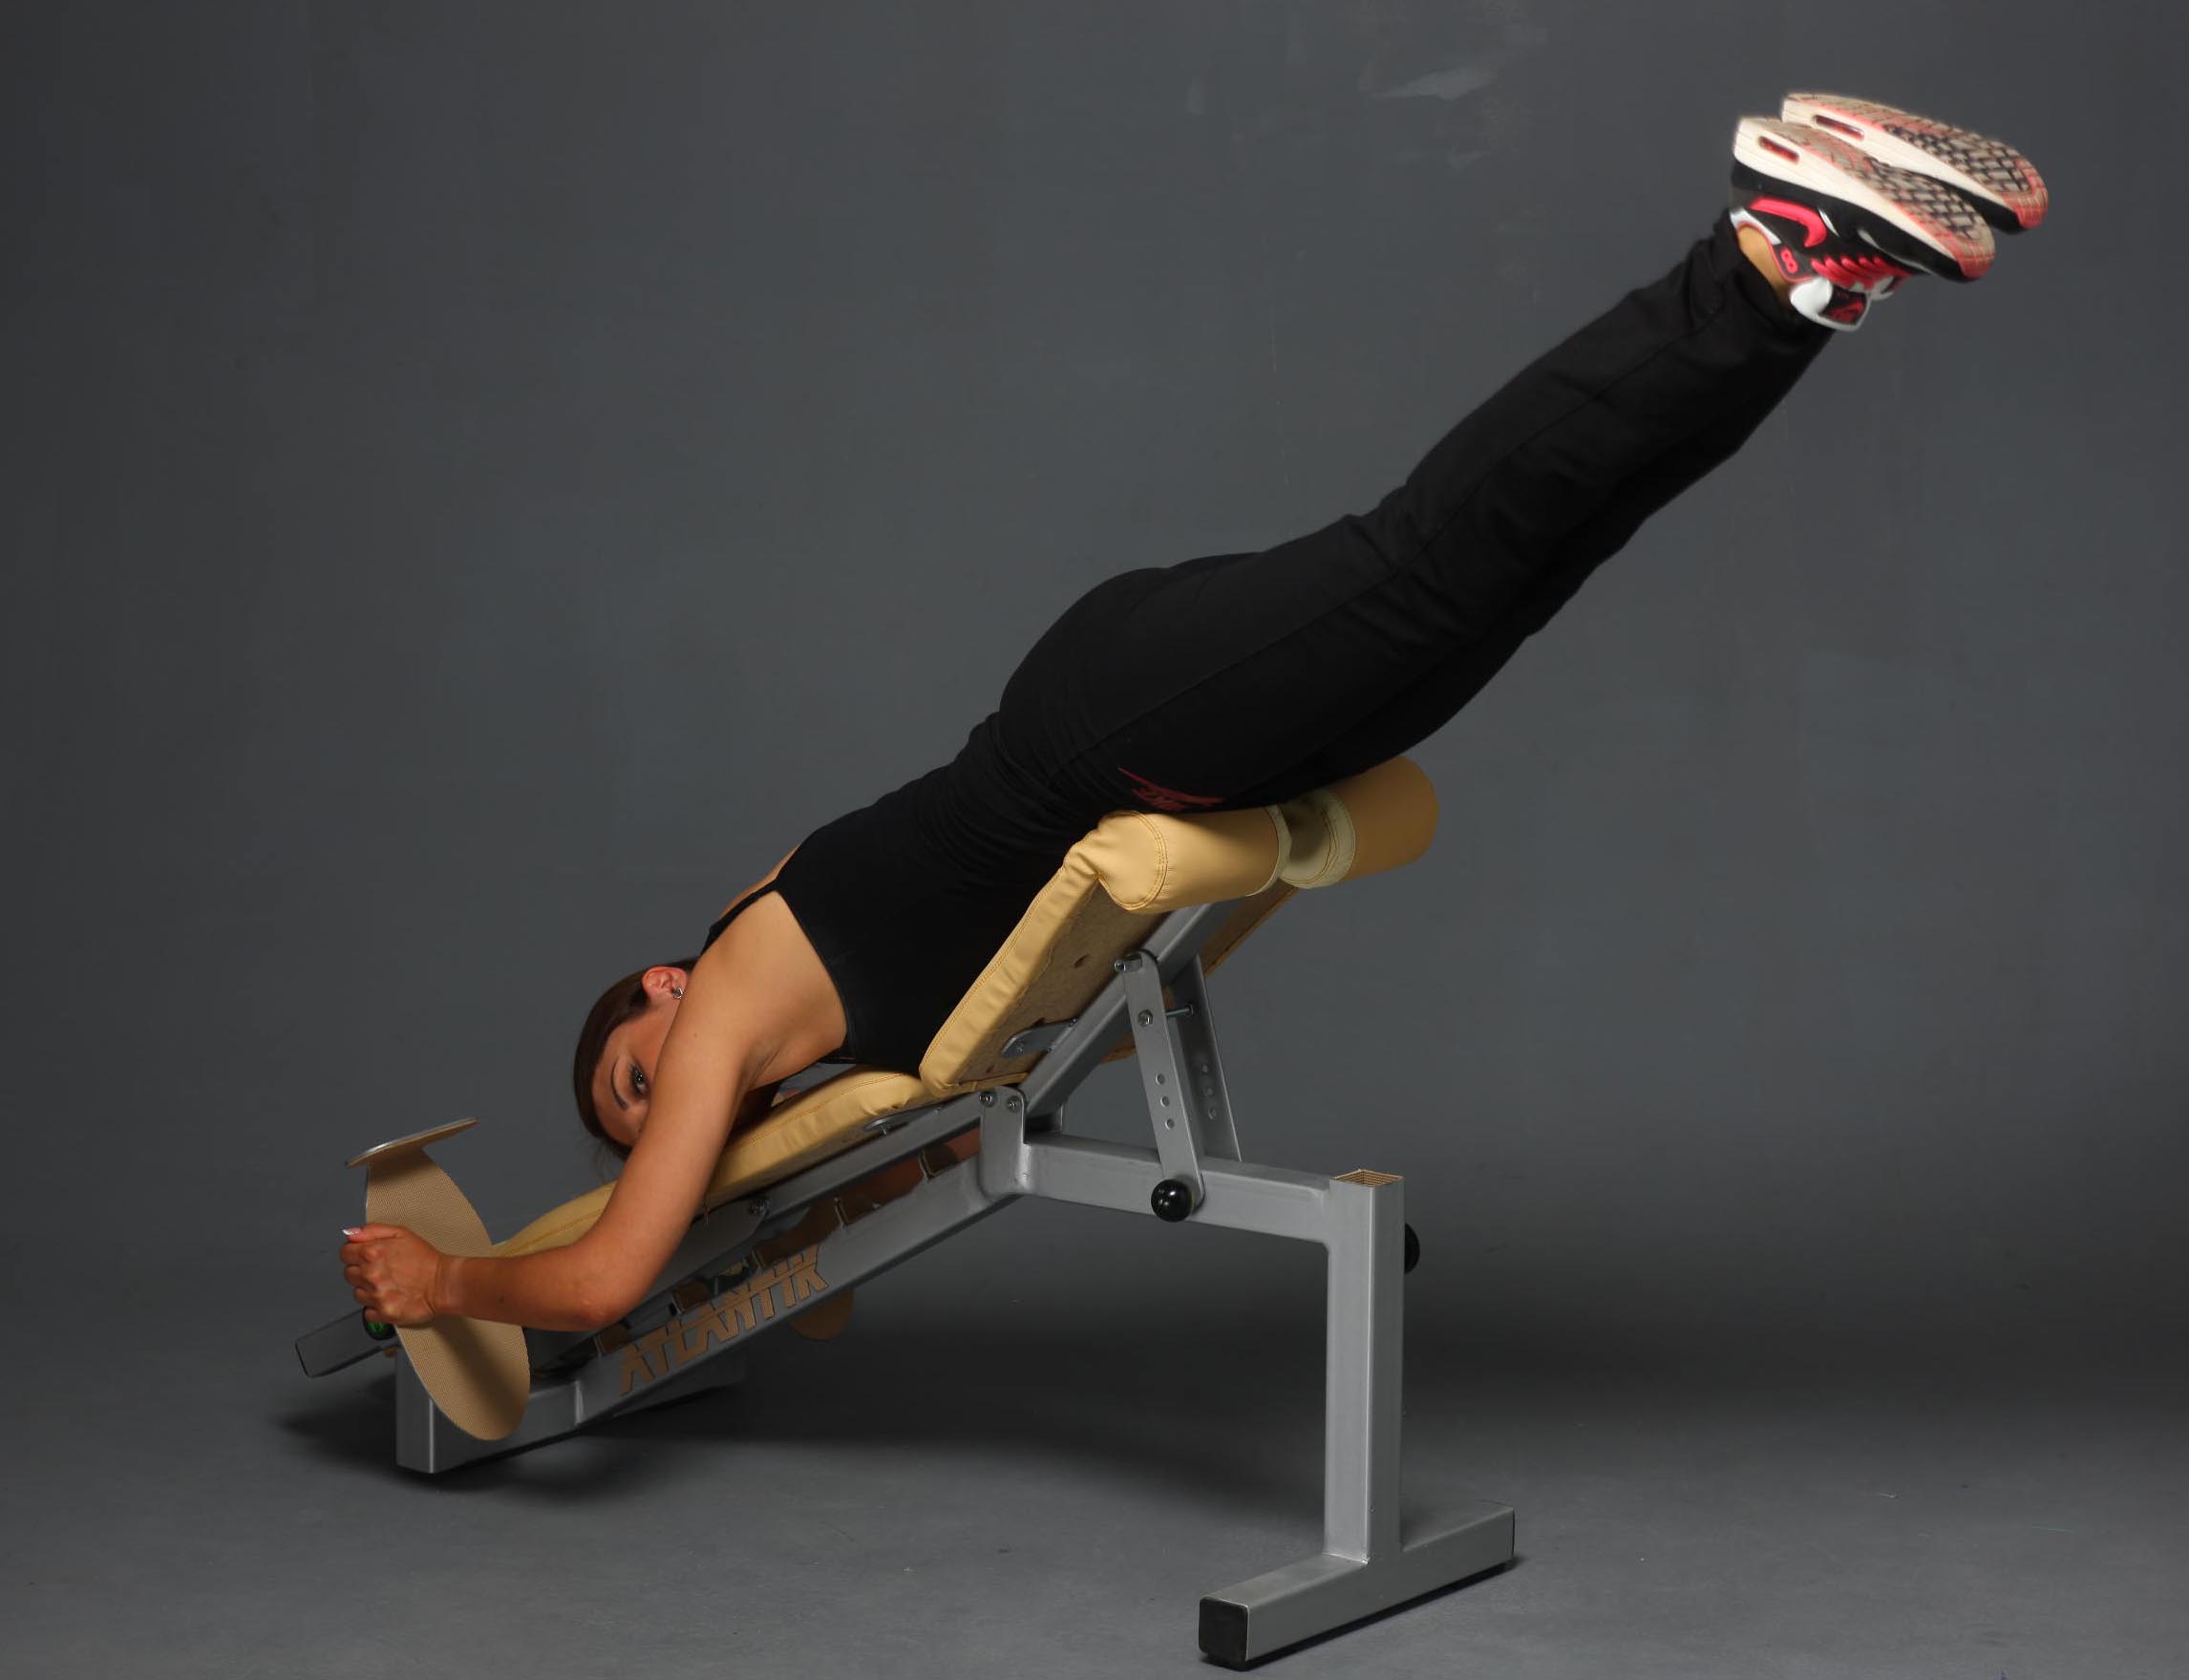 Гиперэкстензия ➤ базовое упражнение для мышц спины, ягодиц и бёдер